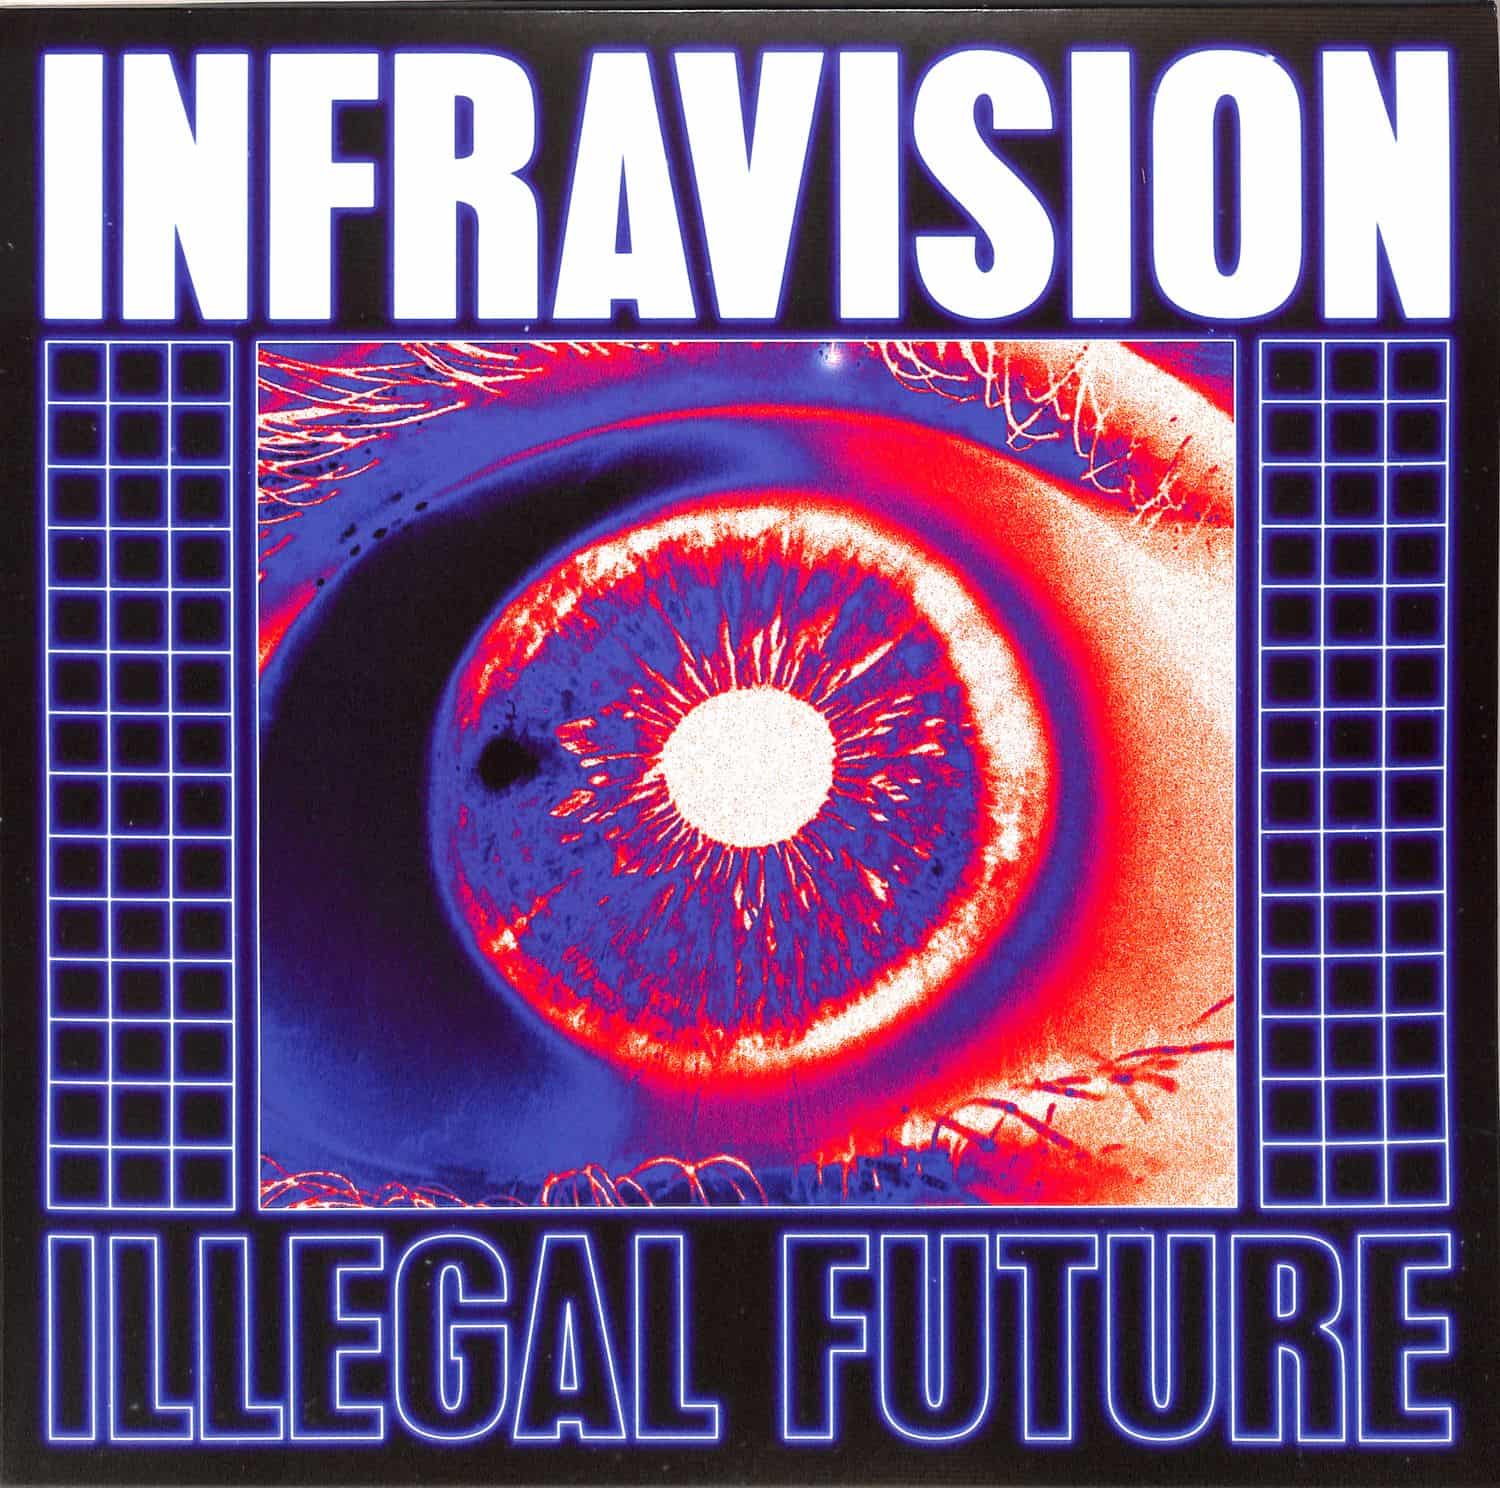 Infravision - ILLEGAL FUTURE 